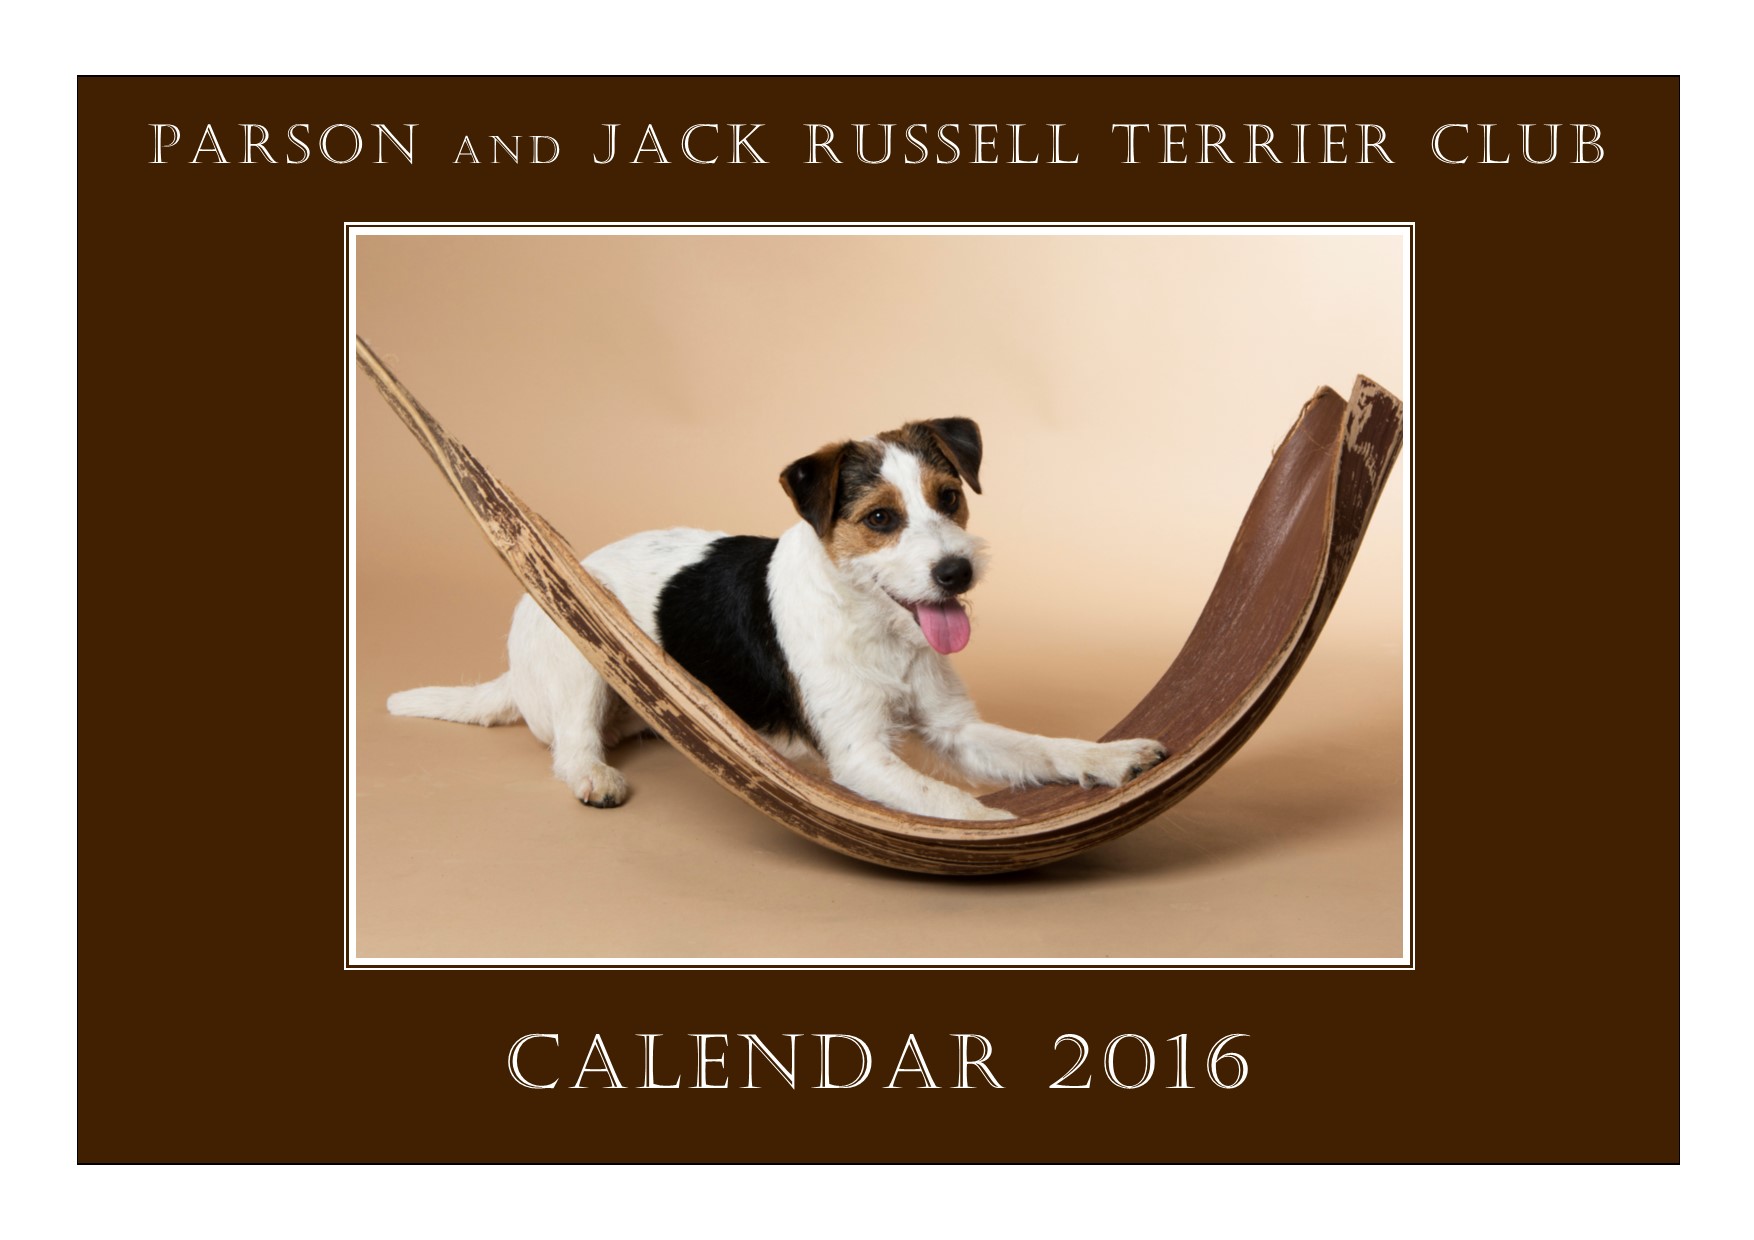 Kalendervorschau 2016